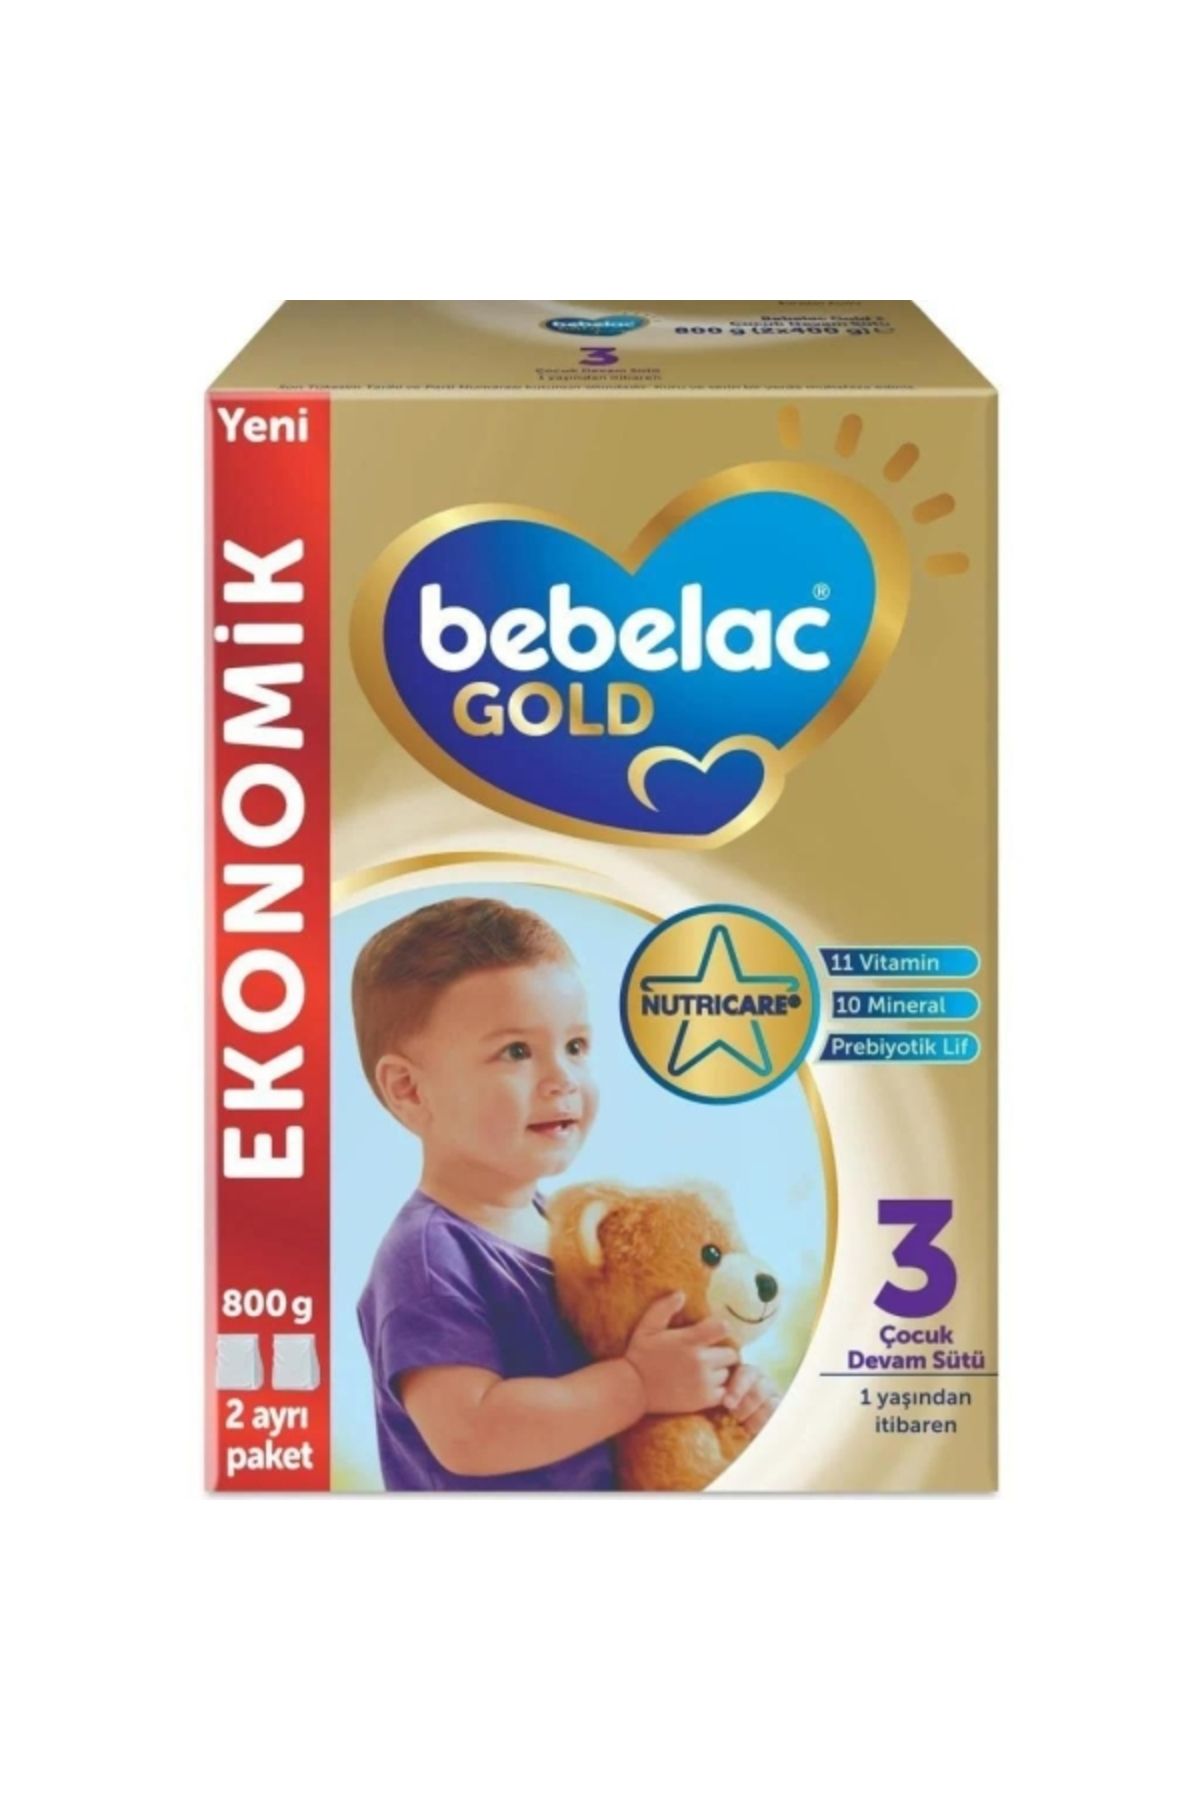 Bebelac Gold 3 Çocuk Devam Sütü 800 gr ( 1 ADET )